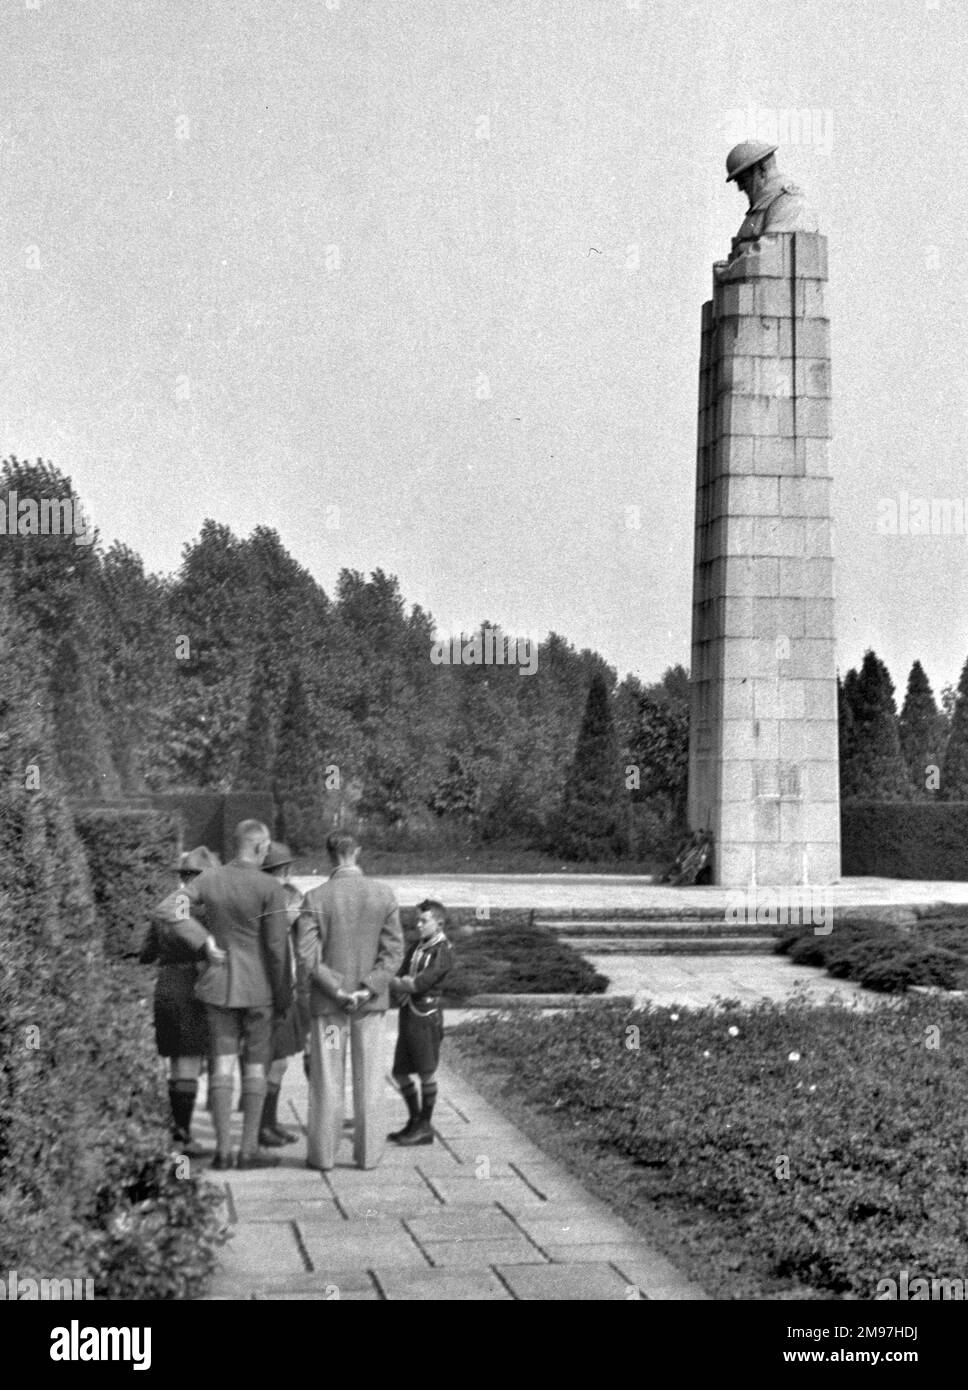 Le mémorial de guerre de St Julien, commémorant les soldats canadiens morts à la deuxième bataille d'Ypres, le 1915 avril. La sculpture au sommet est connue sous le nom de soldat couvant. Le mémorial se trouve à Langemark, en Belgique. Banque D'Images